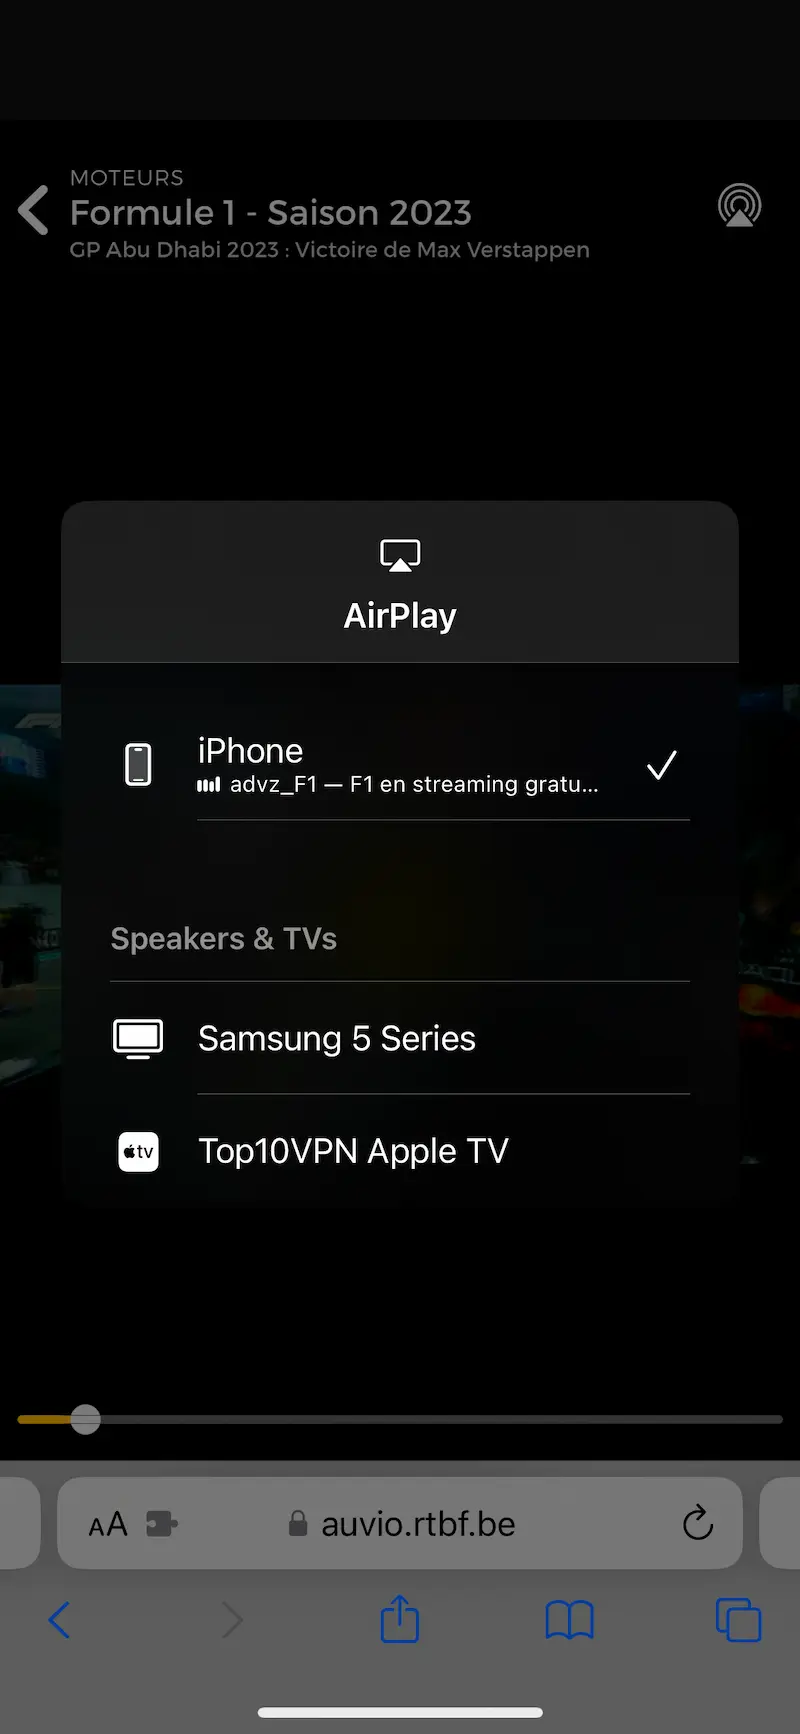 Interfejs platformy streamingowej RTBF Auvio z otwartym menu AirPlay, pokazujący F1 jako wybrany materiał. Urządzenia na liście to „iPhone”, „Samsung 5 Series” oraz „Top10VPN Apple TV”. Interfejs wyświetla również adres „auvio.rtbf.be” u dołu ekranu.